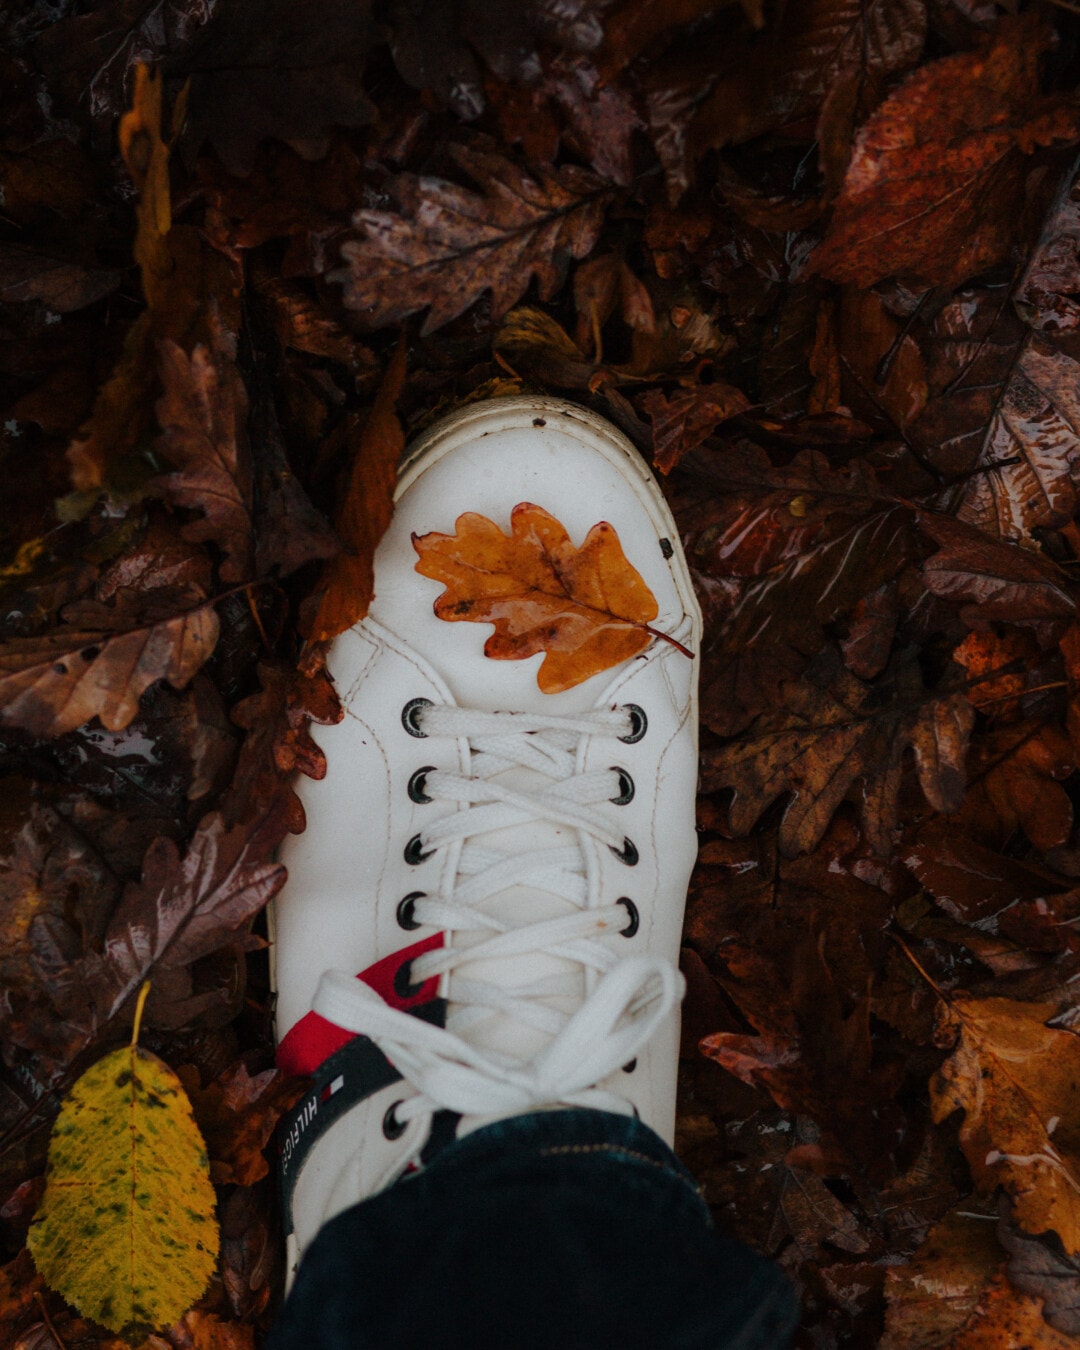 hösten, sneakers, våt, blad, skor, gula blad, fukt, smutsiga, gamla, vintage